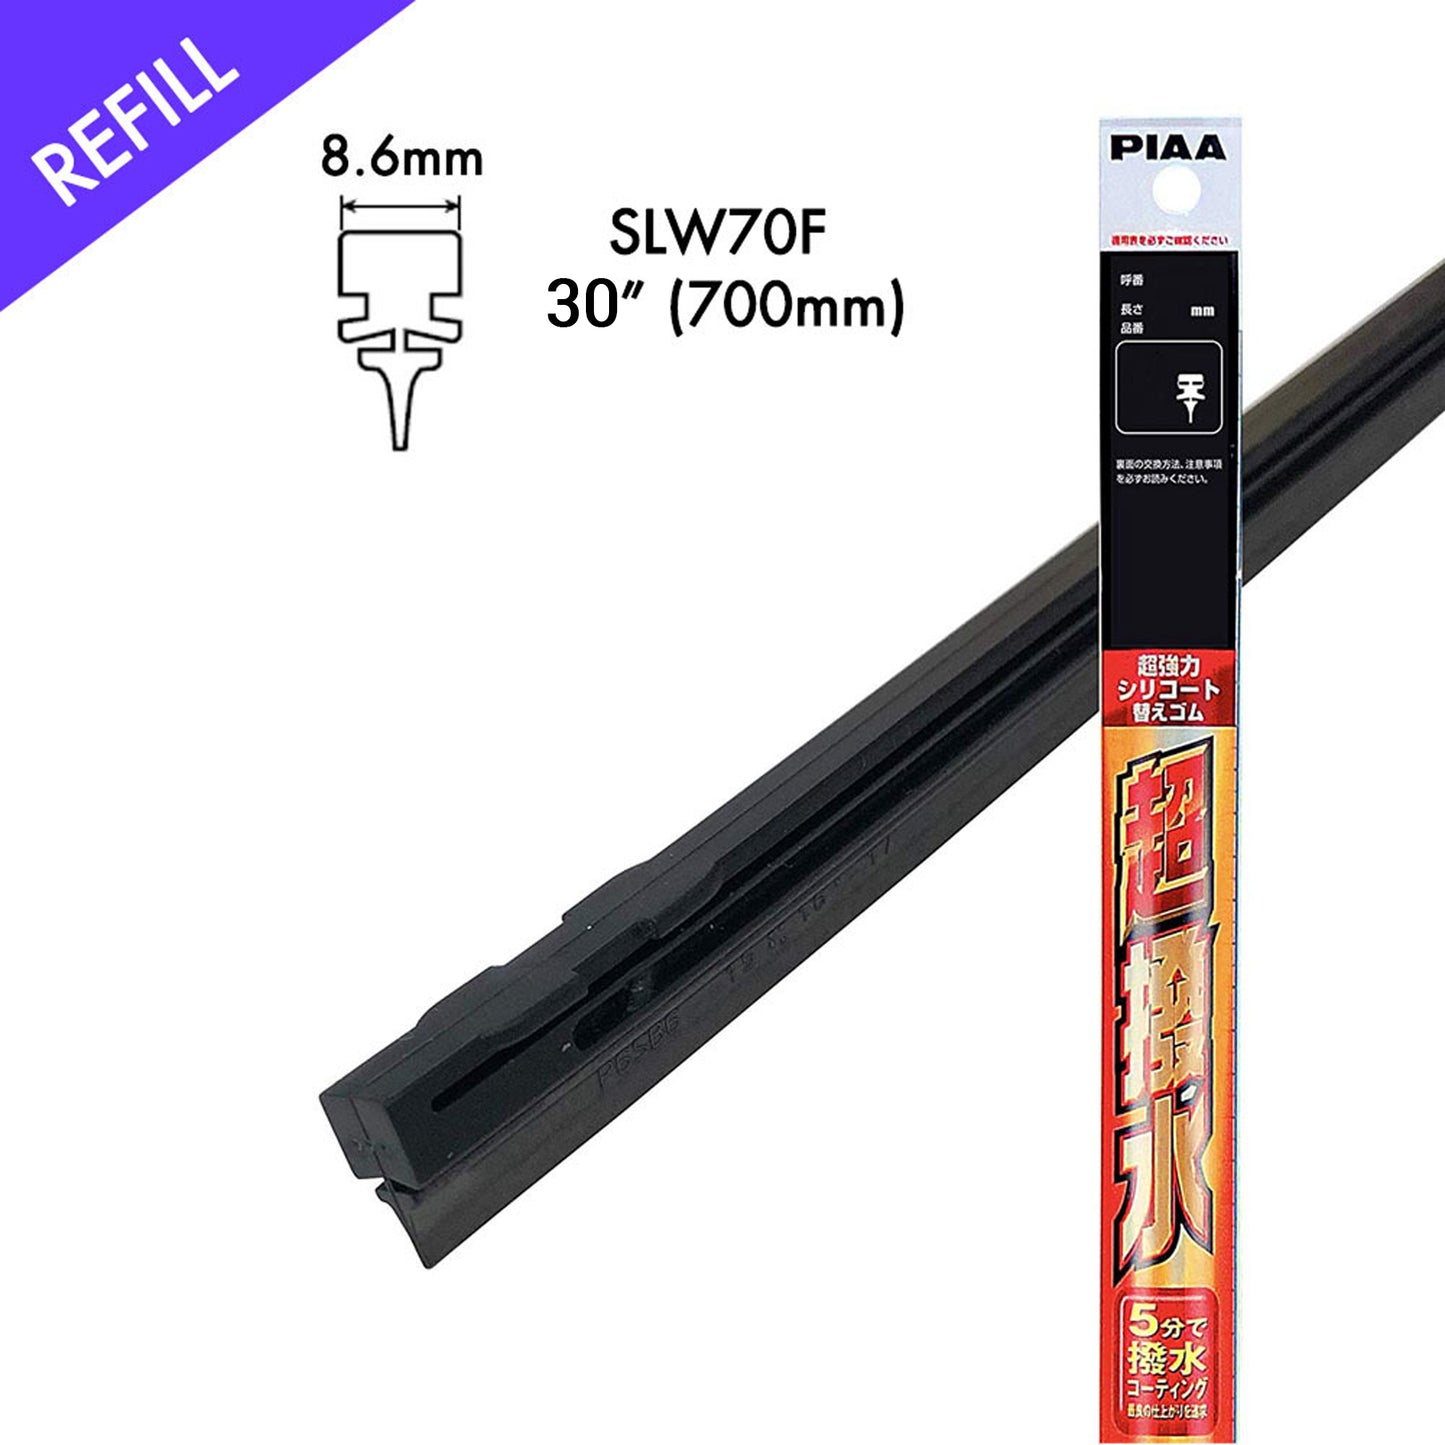 PIAA Silicone Wiper Refill for Uniblade ( 30" ) (Barcode: 4960311009498 )